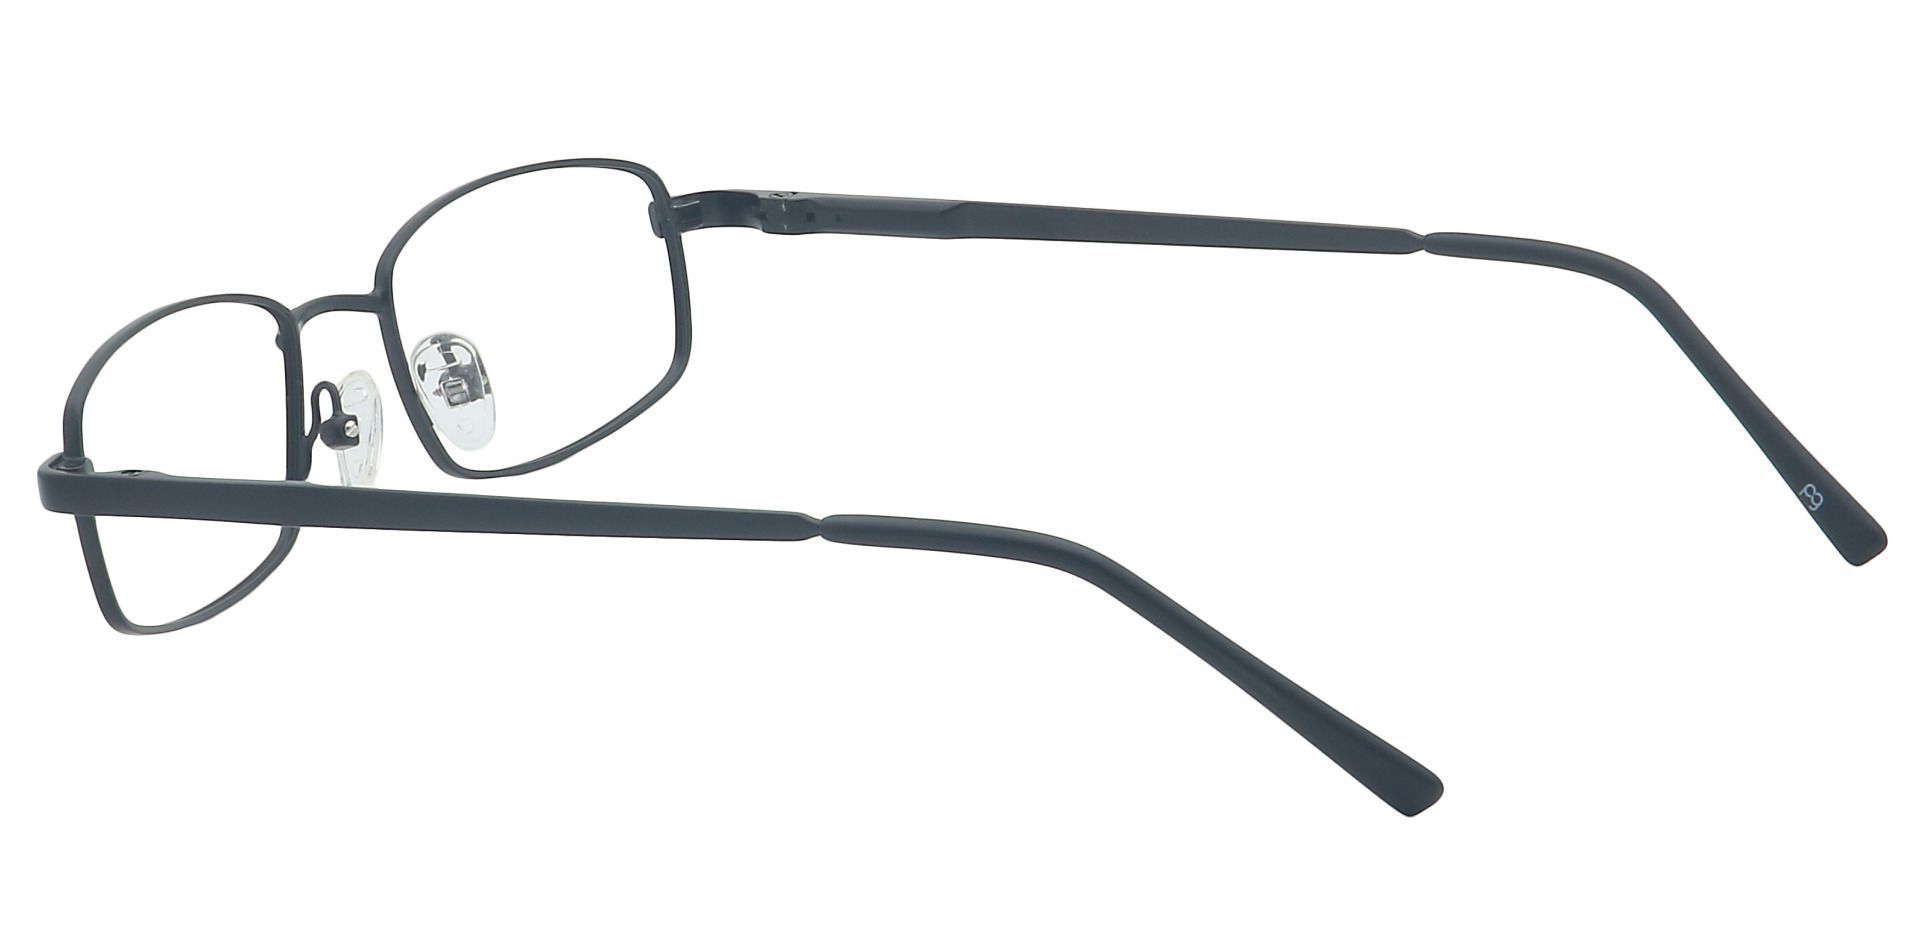 Sheldon Square Progressive Glasses - Black